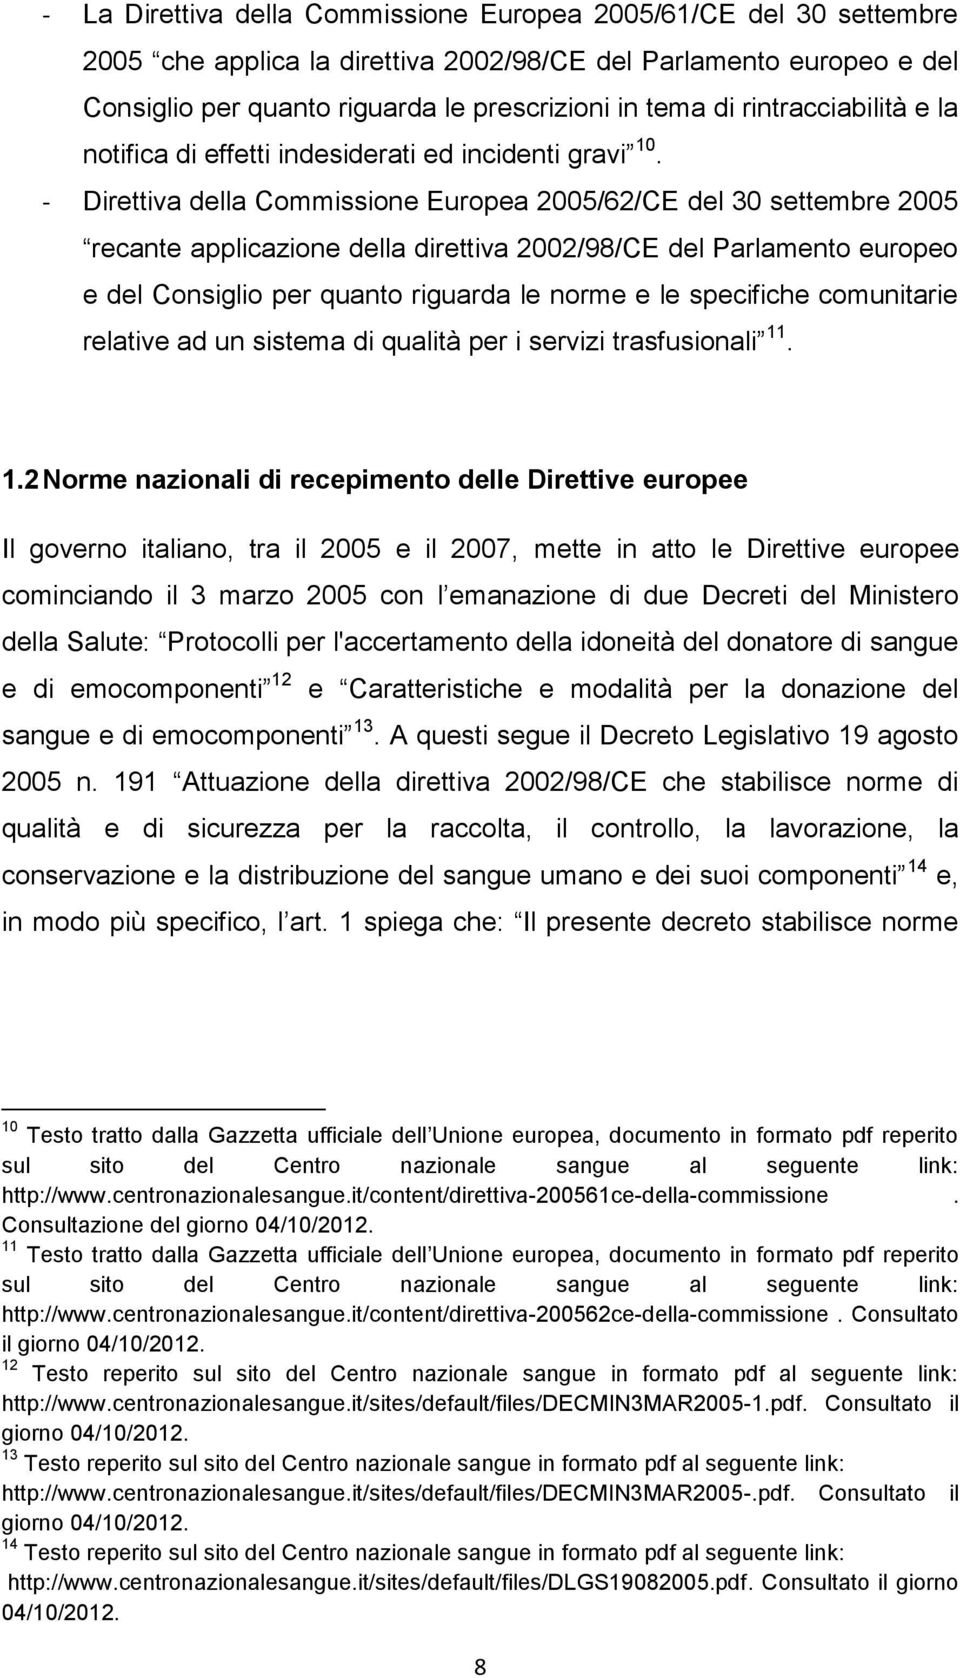 - Direttiva della Commissione Europea 2005/62/CE del 30 settembre 2005 recante applicazione della direttiva 2002/98/CE del Parlamento europeo e del Consiglio per quanto riguarda le norme e le